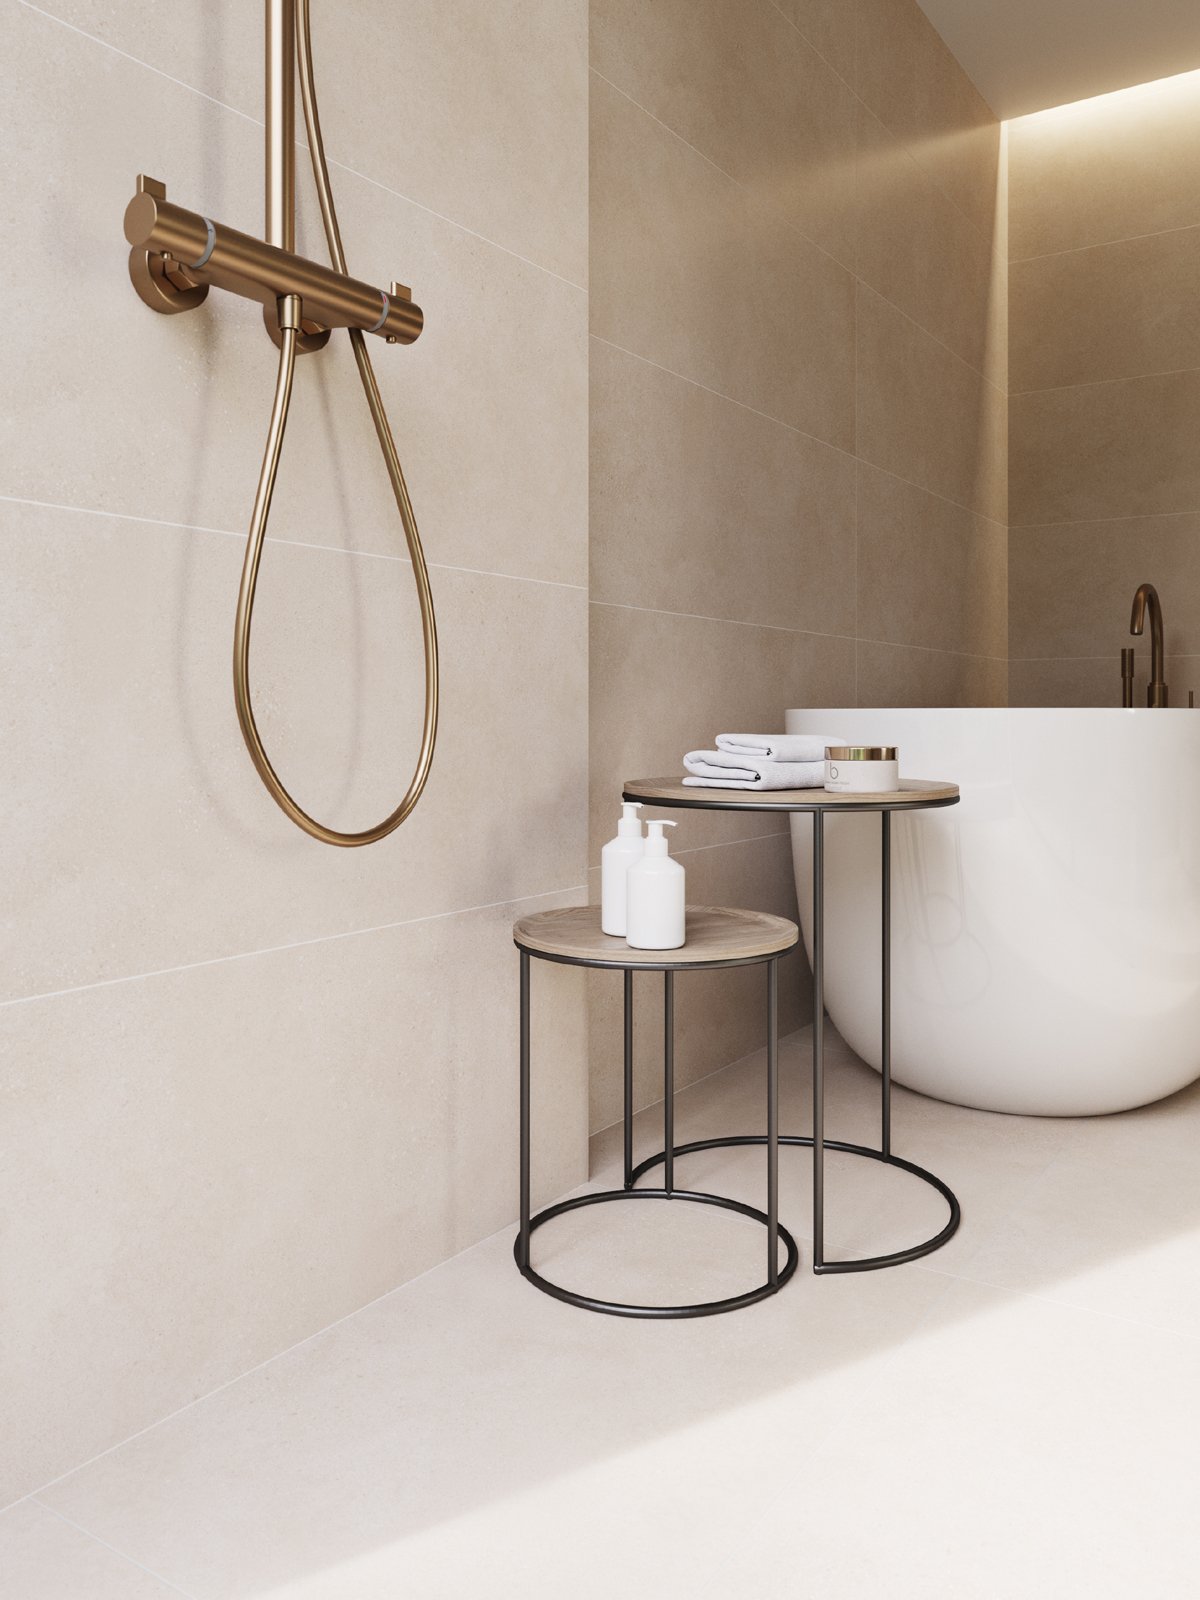 #Koupelna #beton #béžová #bílá #350 - 500 Kč/m2 #500 - 700 Kč/m2 #700 - 1000 Kč/m2 #RAKO #Betonico#Moderní styl#Extra velký formát#Velký formát